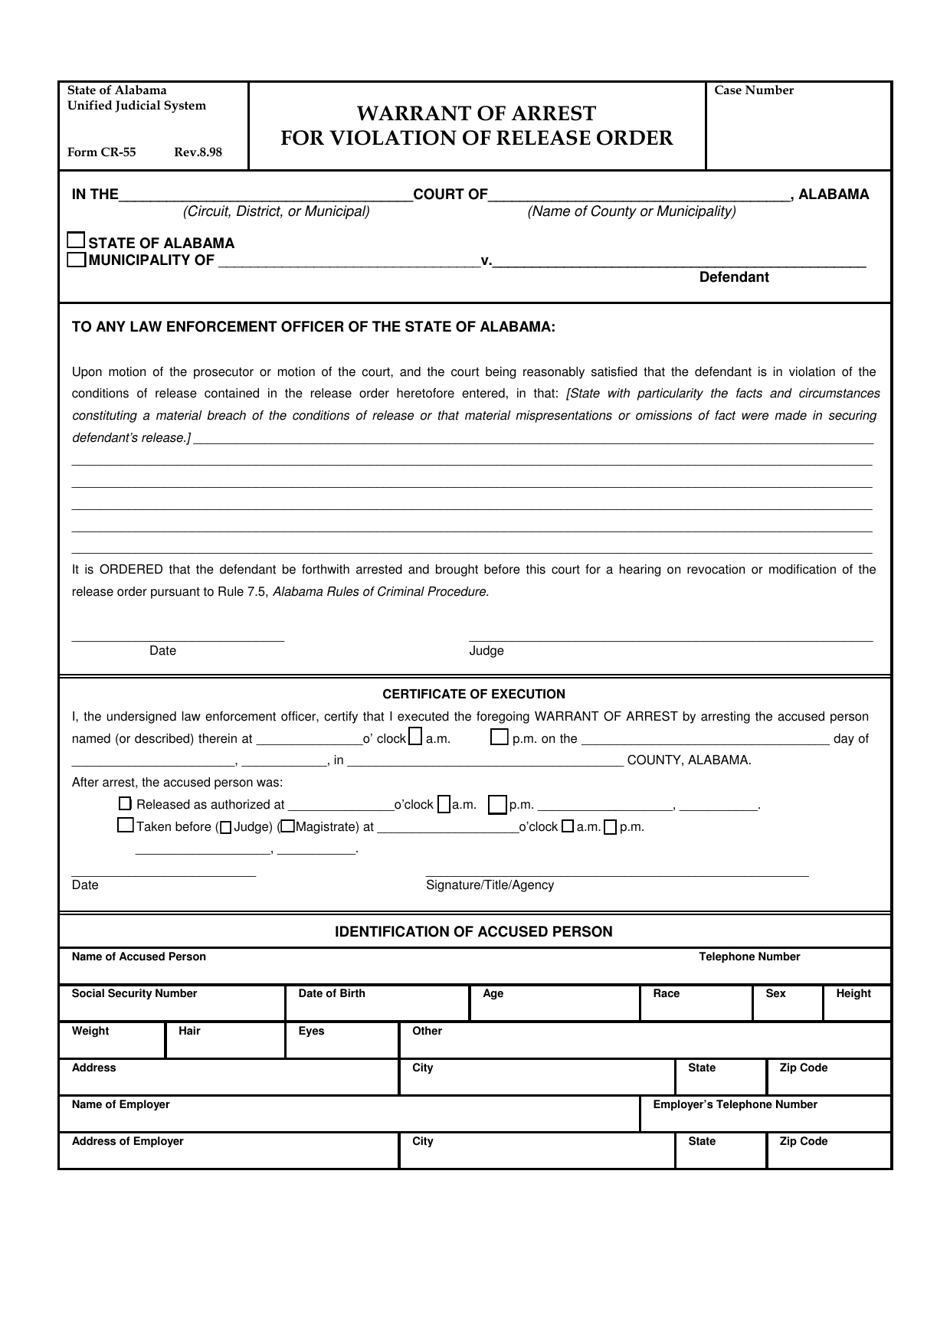 Form CR-55 Warrant of Arrest for Violation of Release Order - Alabama, Page 1